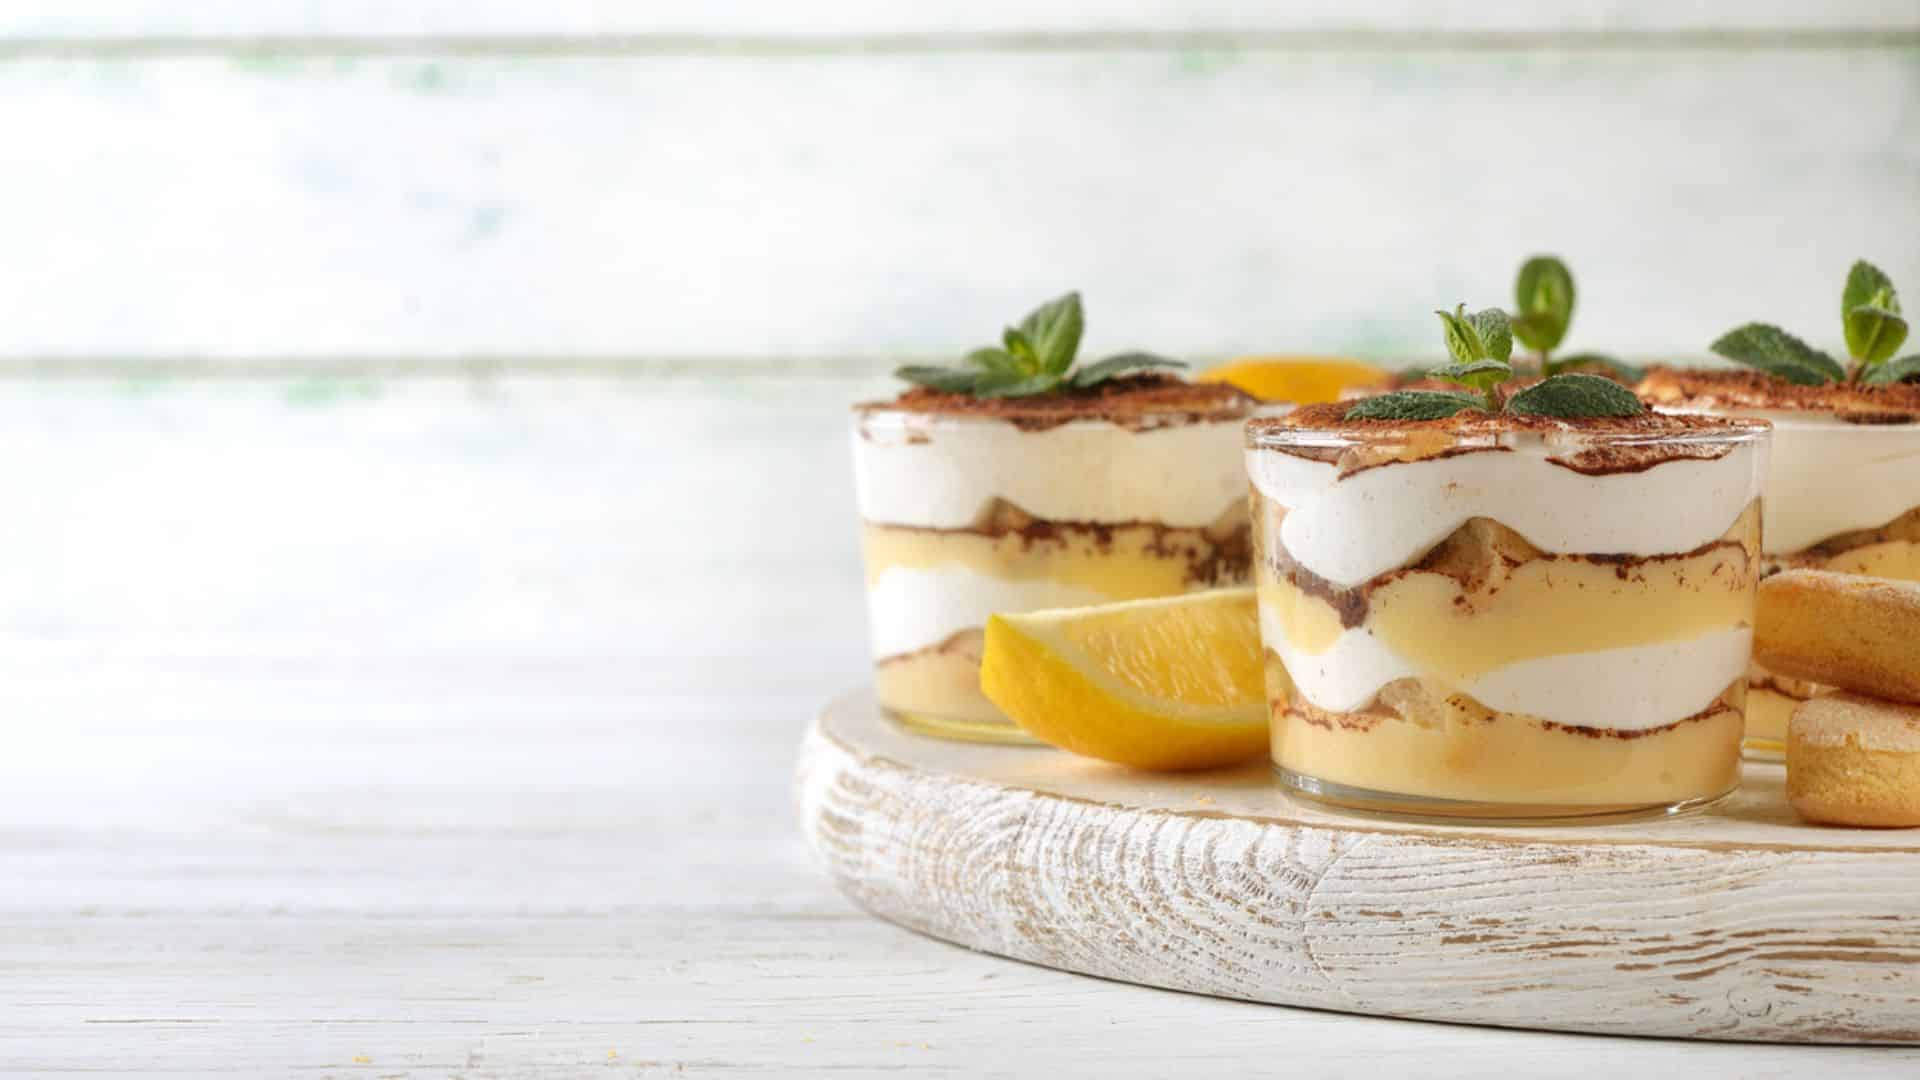 Tiramisu au citron : la recette légère pour cet été